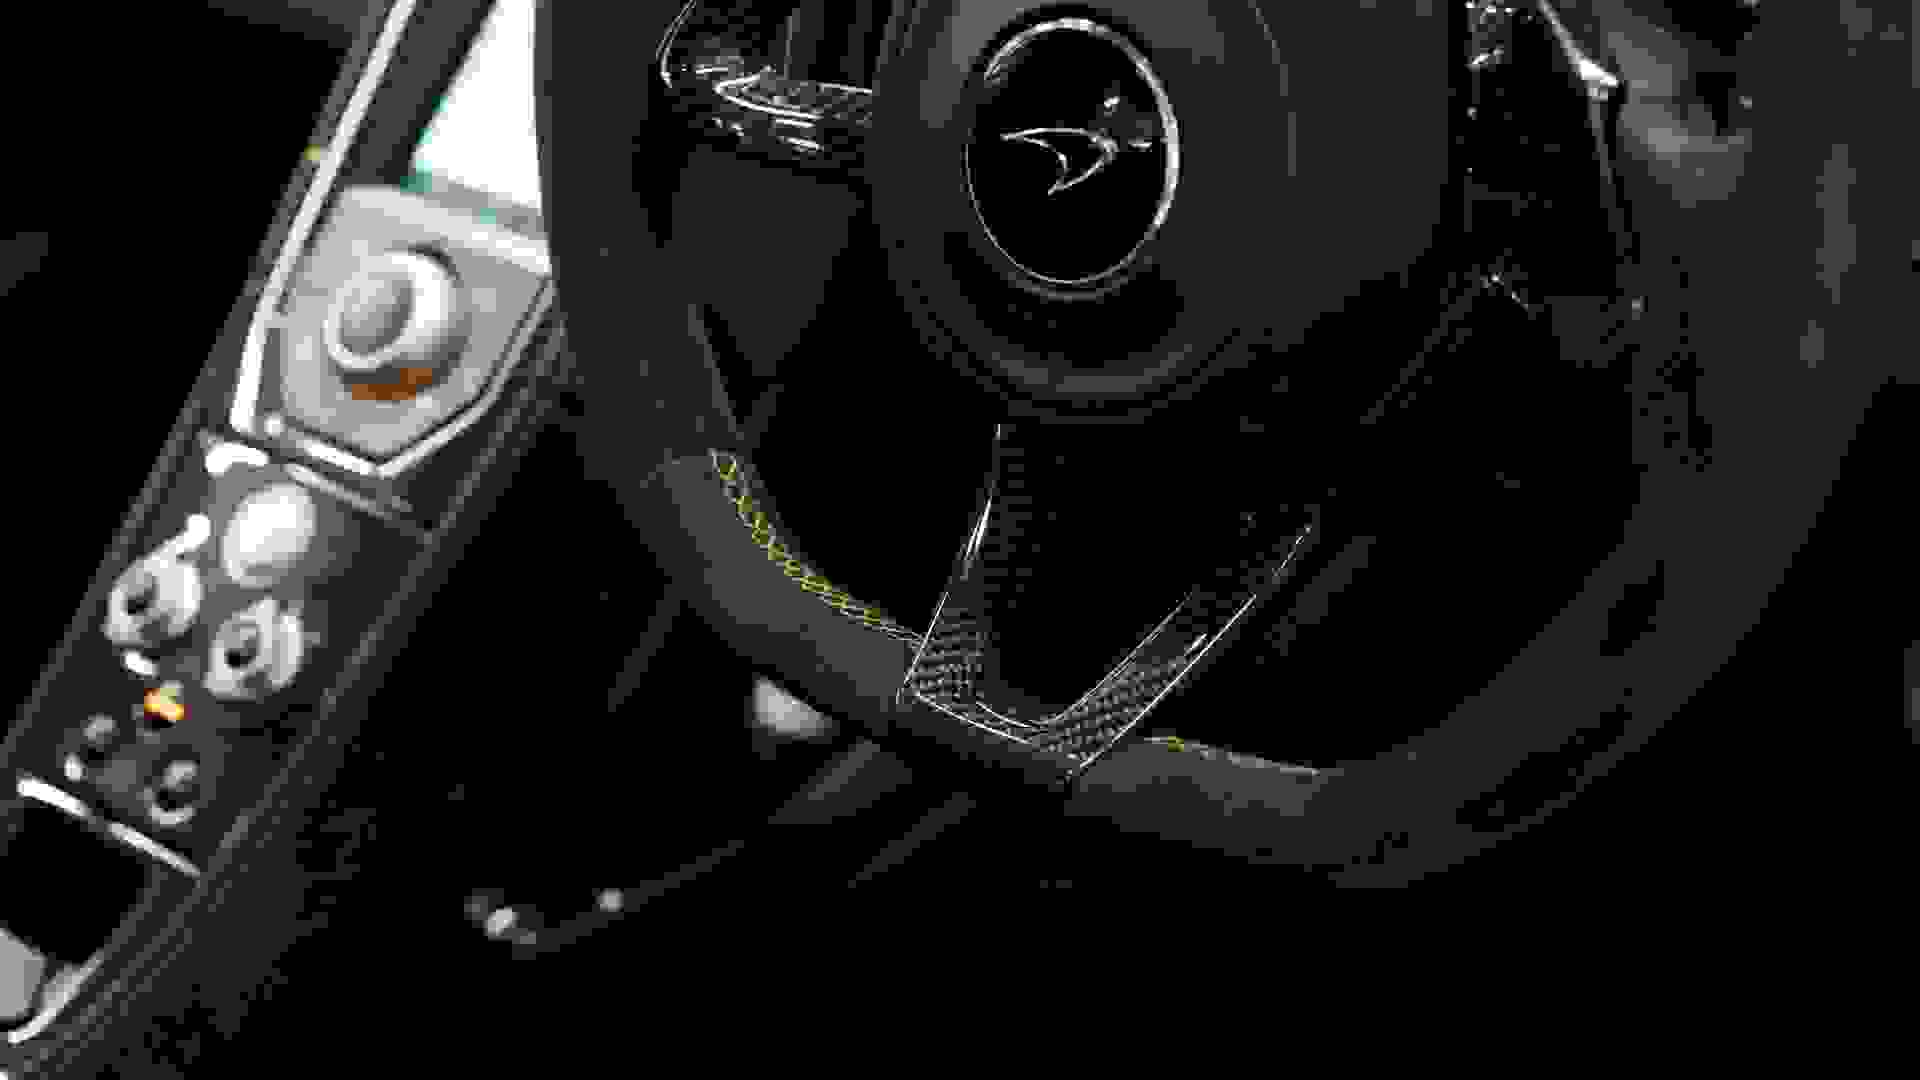 McLaren 650S Photo 0d0bd574-745d-4dab-9366-45cb05deac5d.jpg